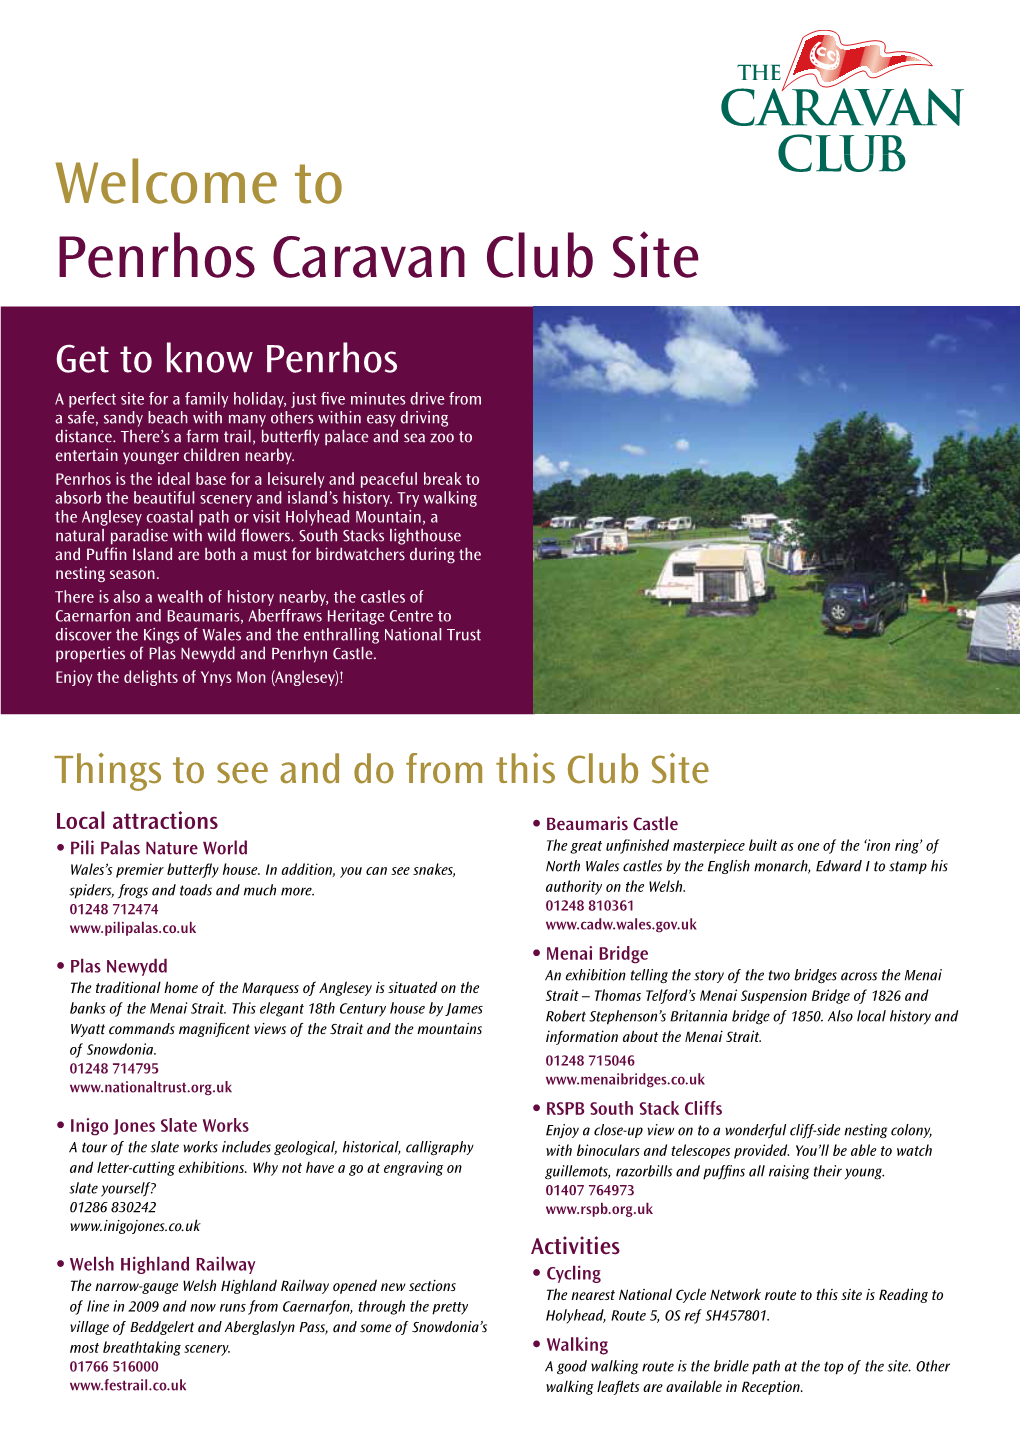 Welcome to Penrhos Caravan Club Site